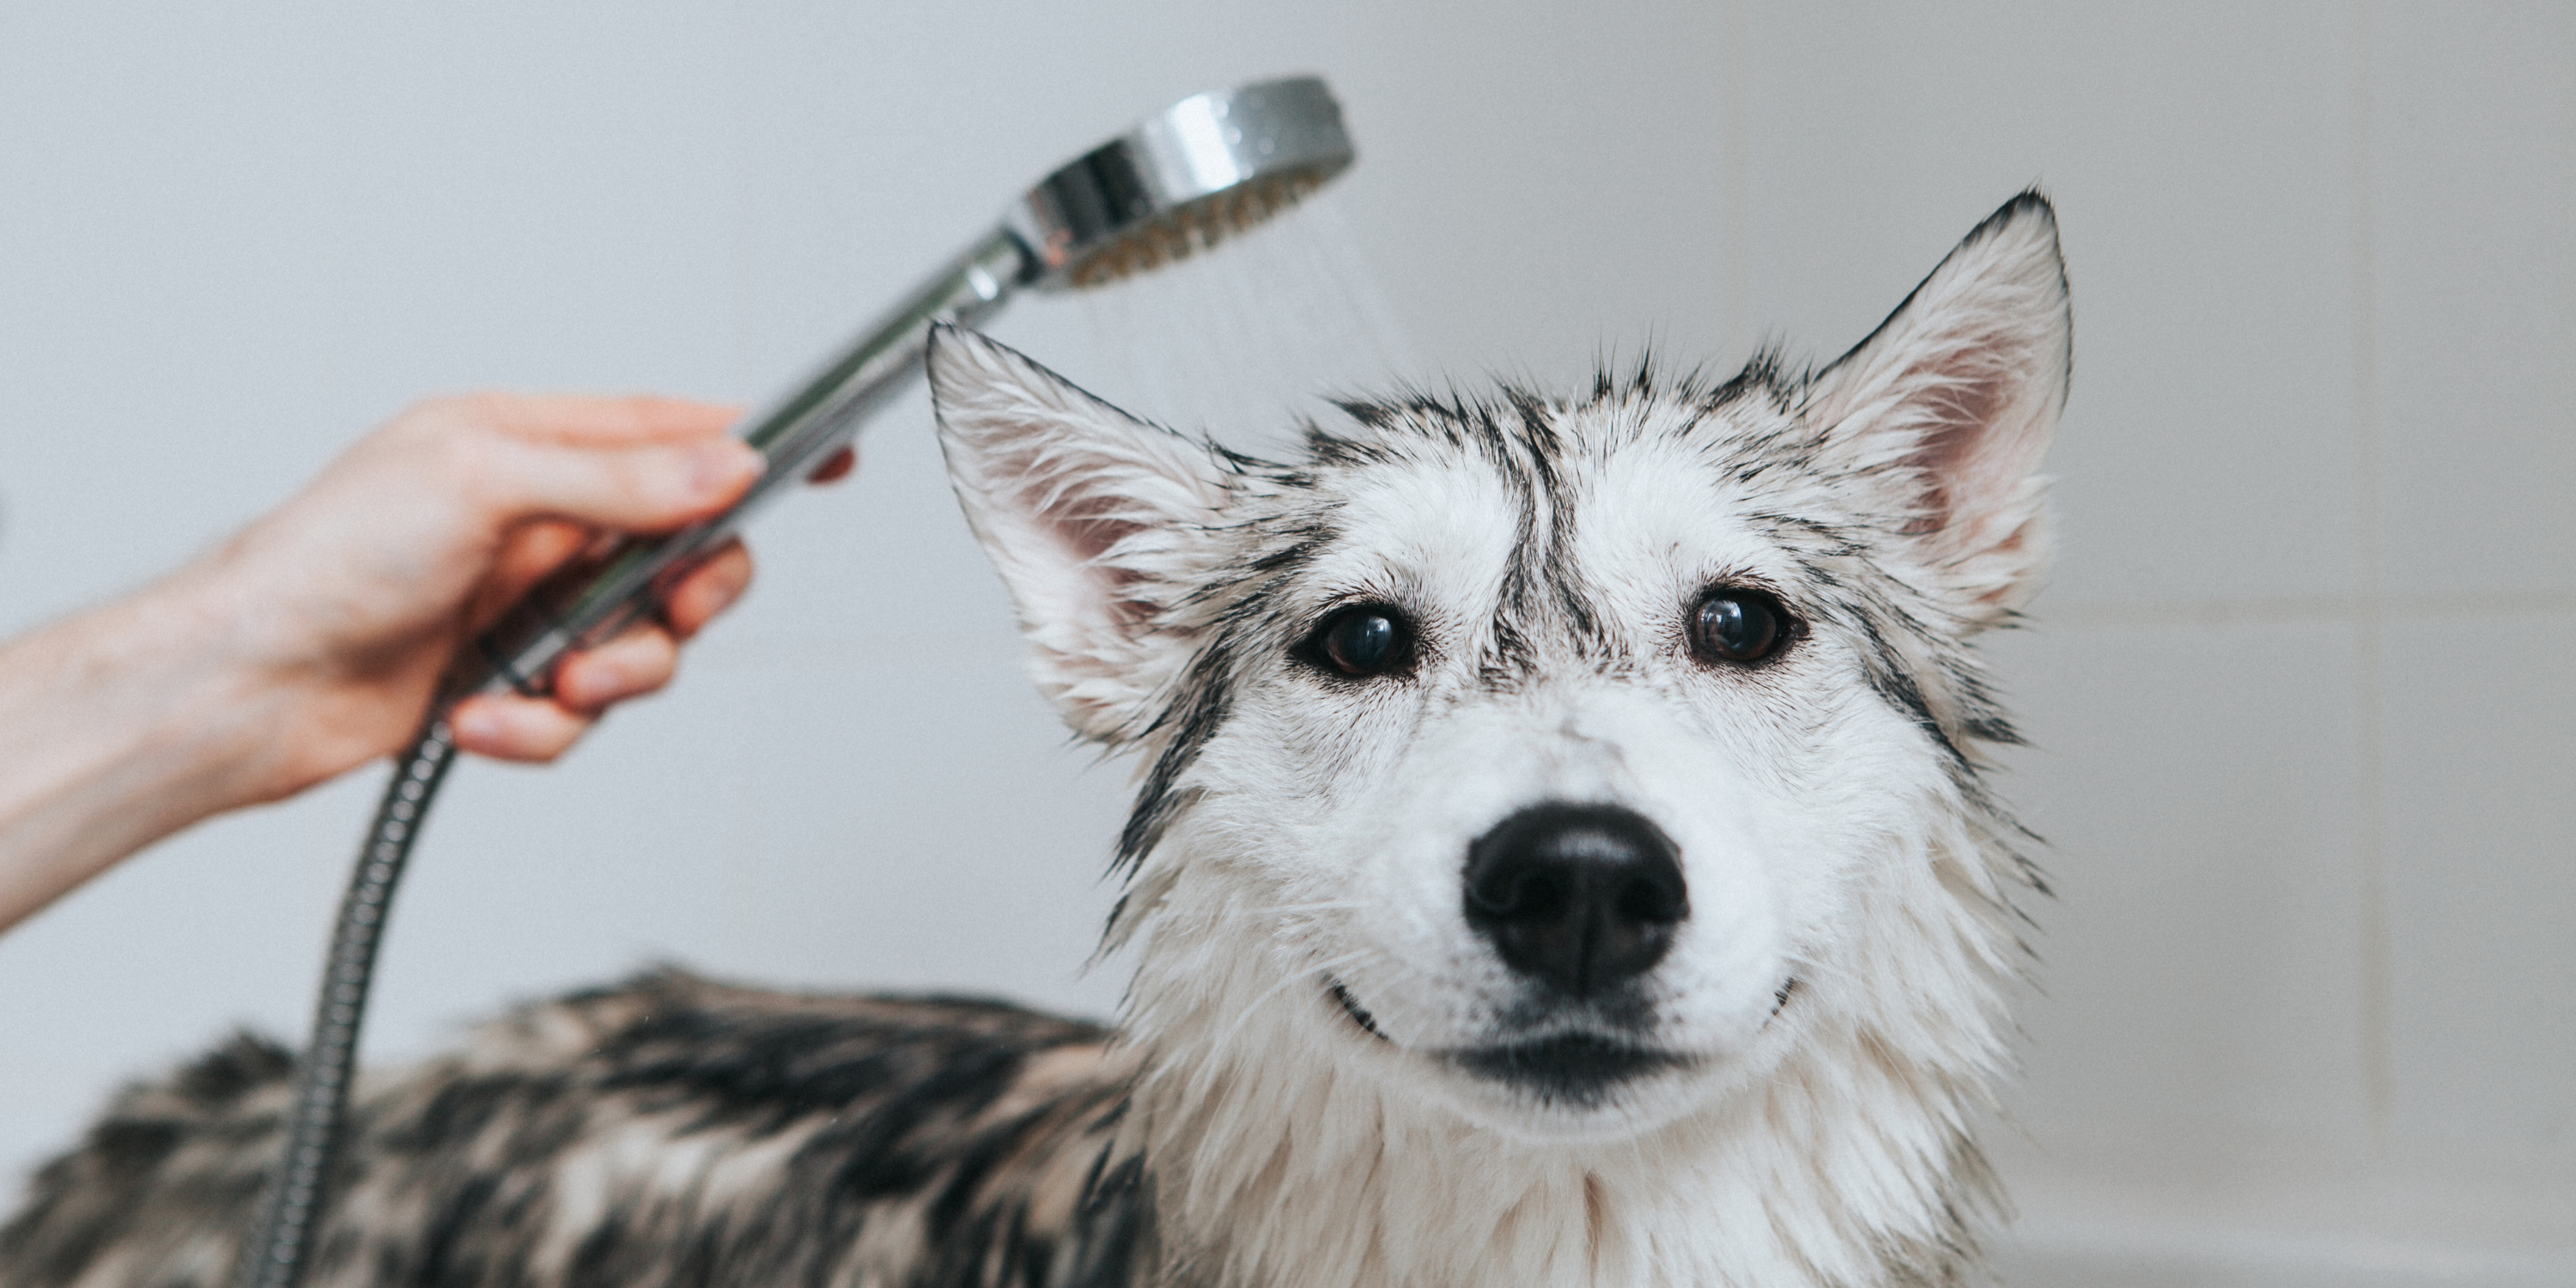 10 Tips on How to Make Bathtime Enjoyable For Your Dog